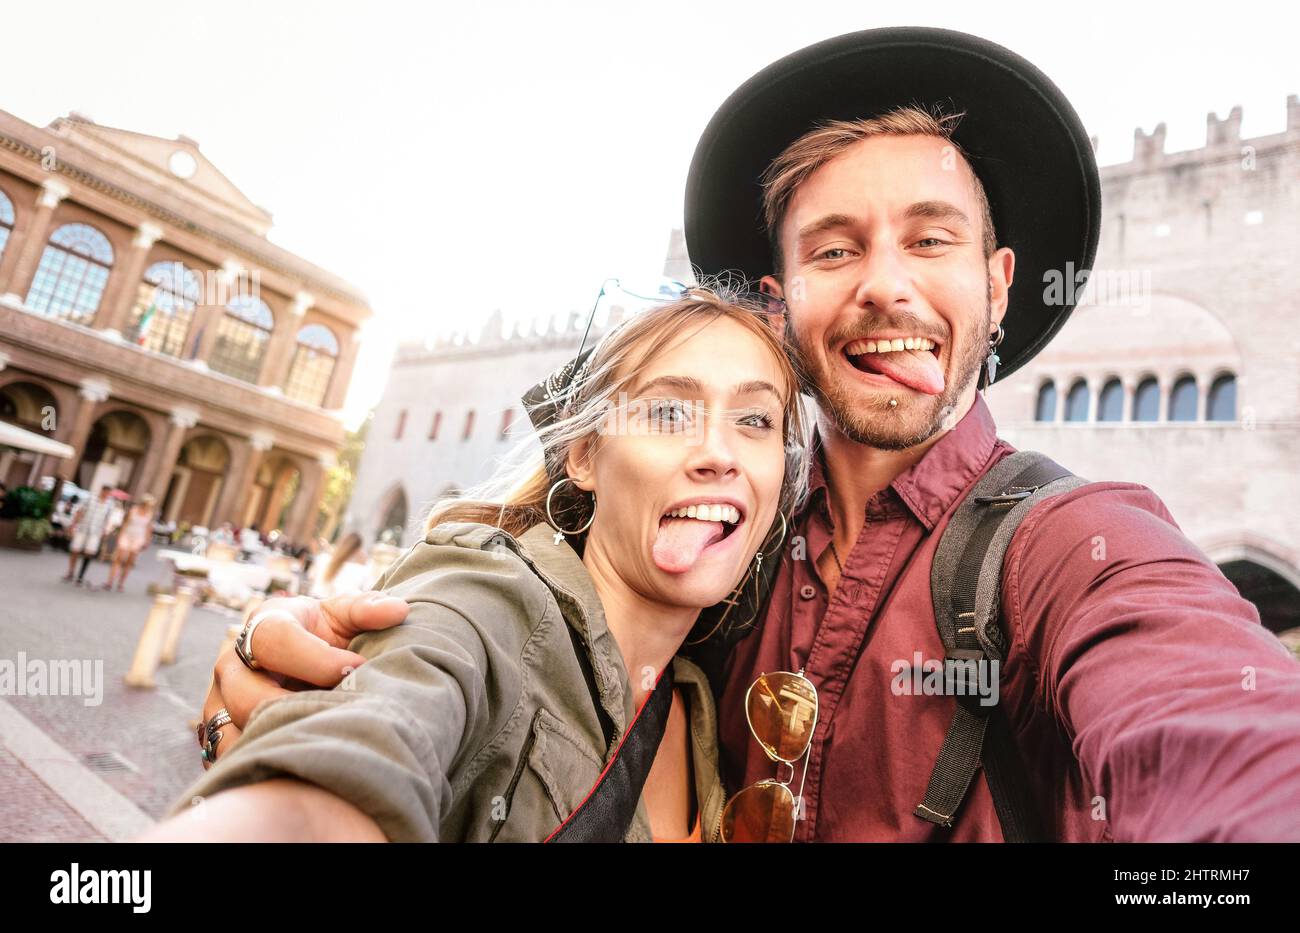 Glücklicher Freund und Freundin in der Liebe mit echten Spaß machen Selfie in der Altstadt Tour - Wanderlust Lifestyle Reise Urlaubskonzept mit Tourist Stockfoto